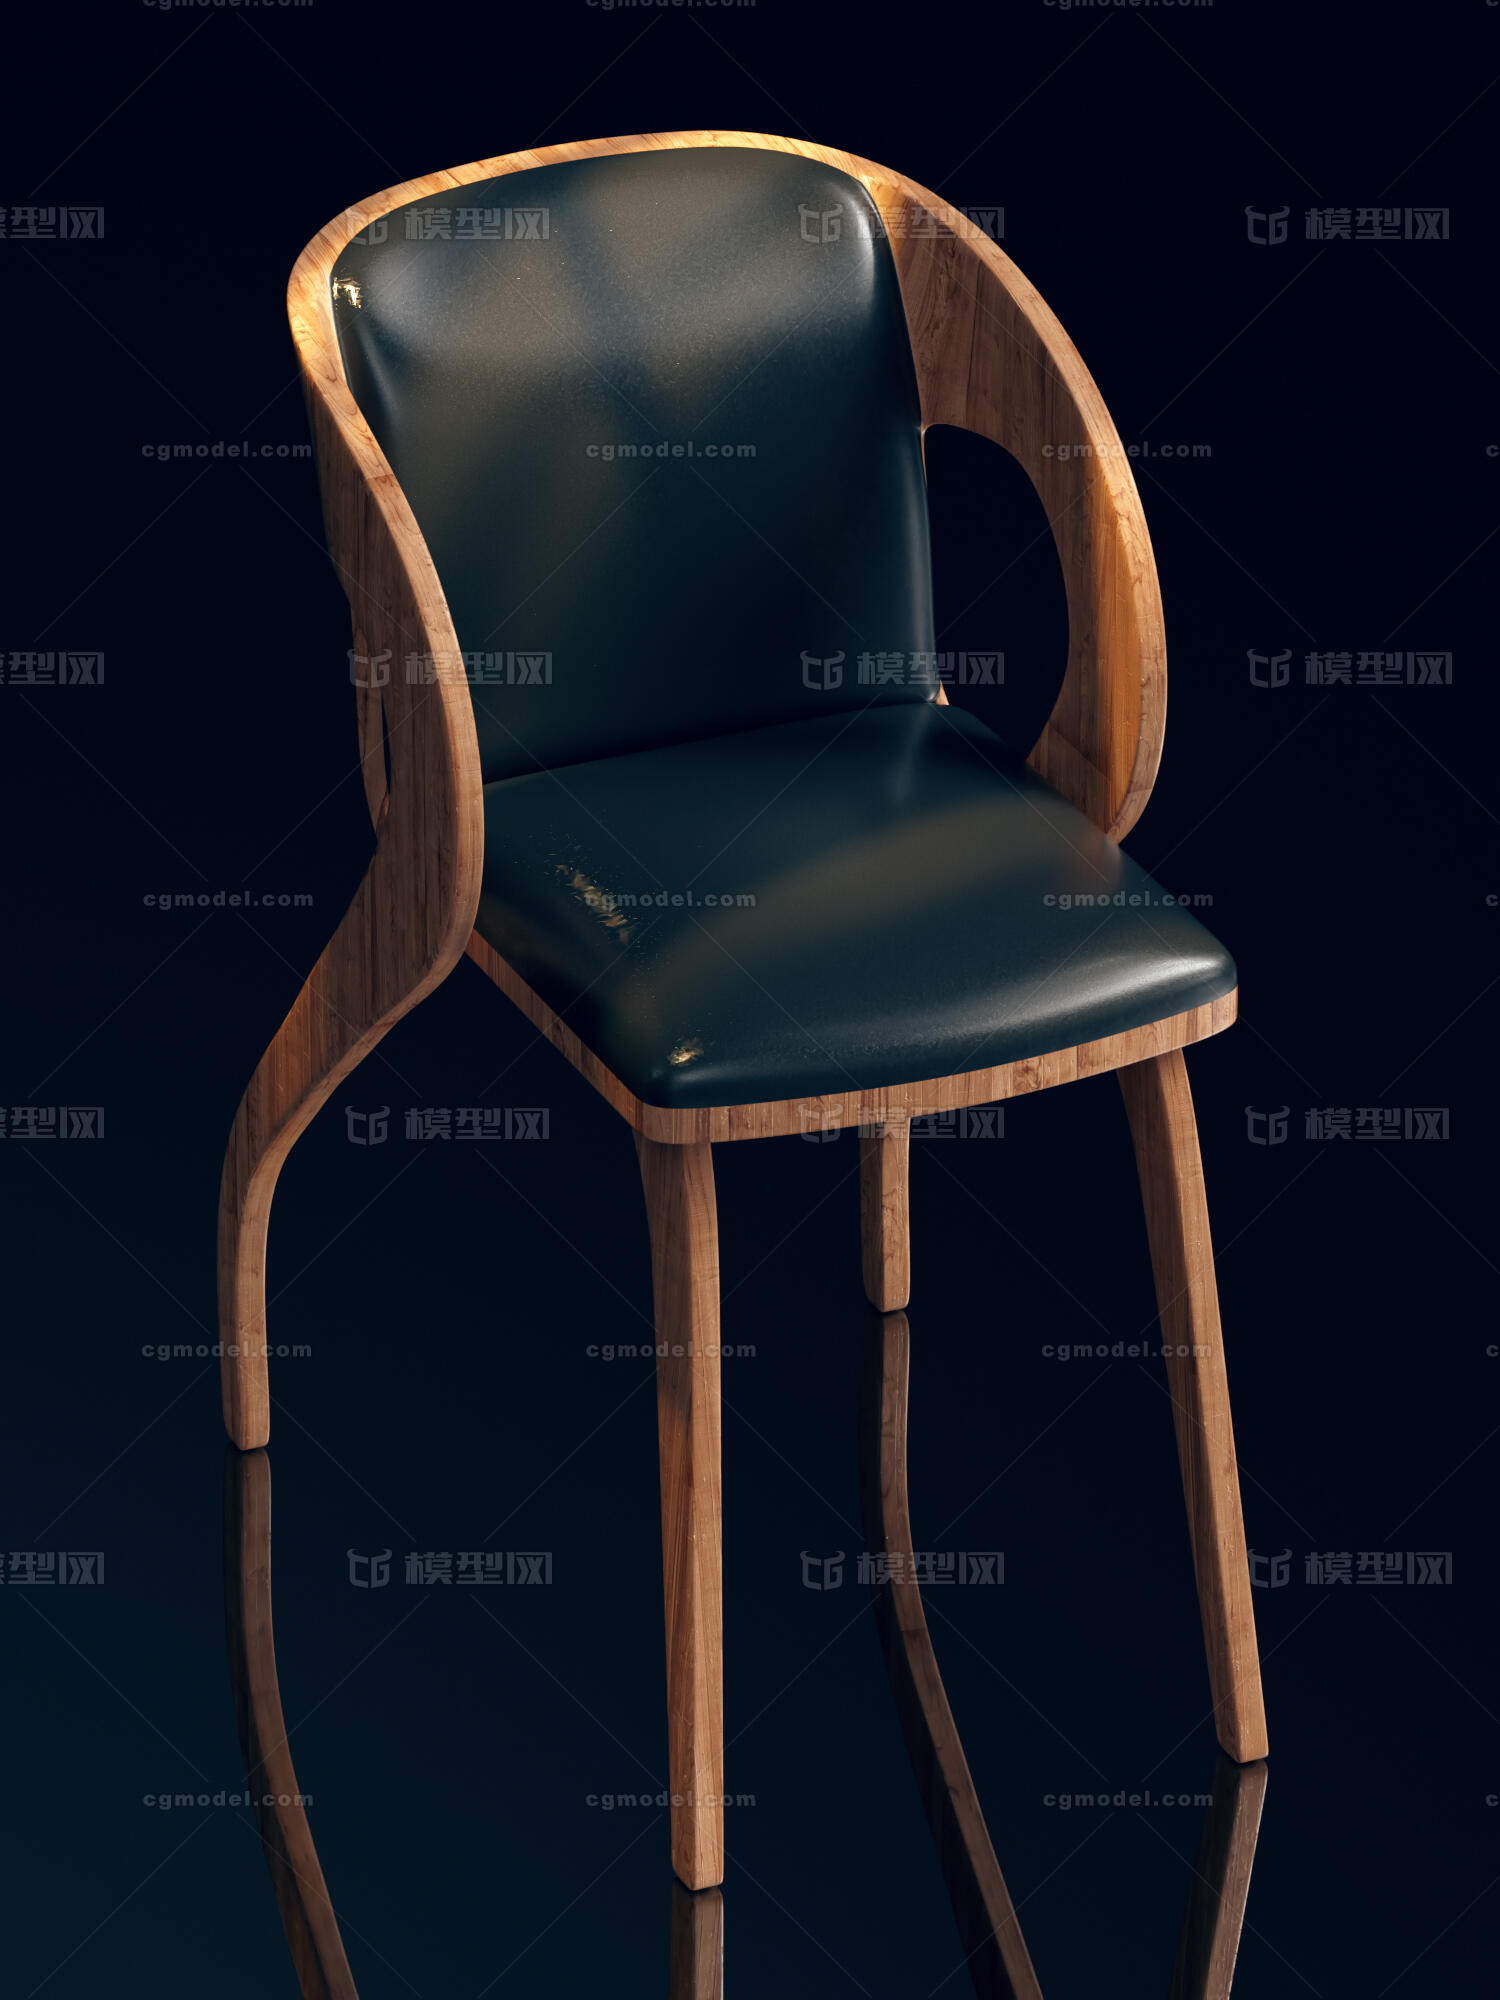 椅子原创模型设计,可商用,附带贴图,c4d r19版本,oc  4